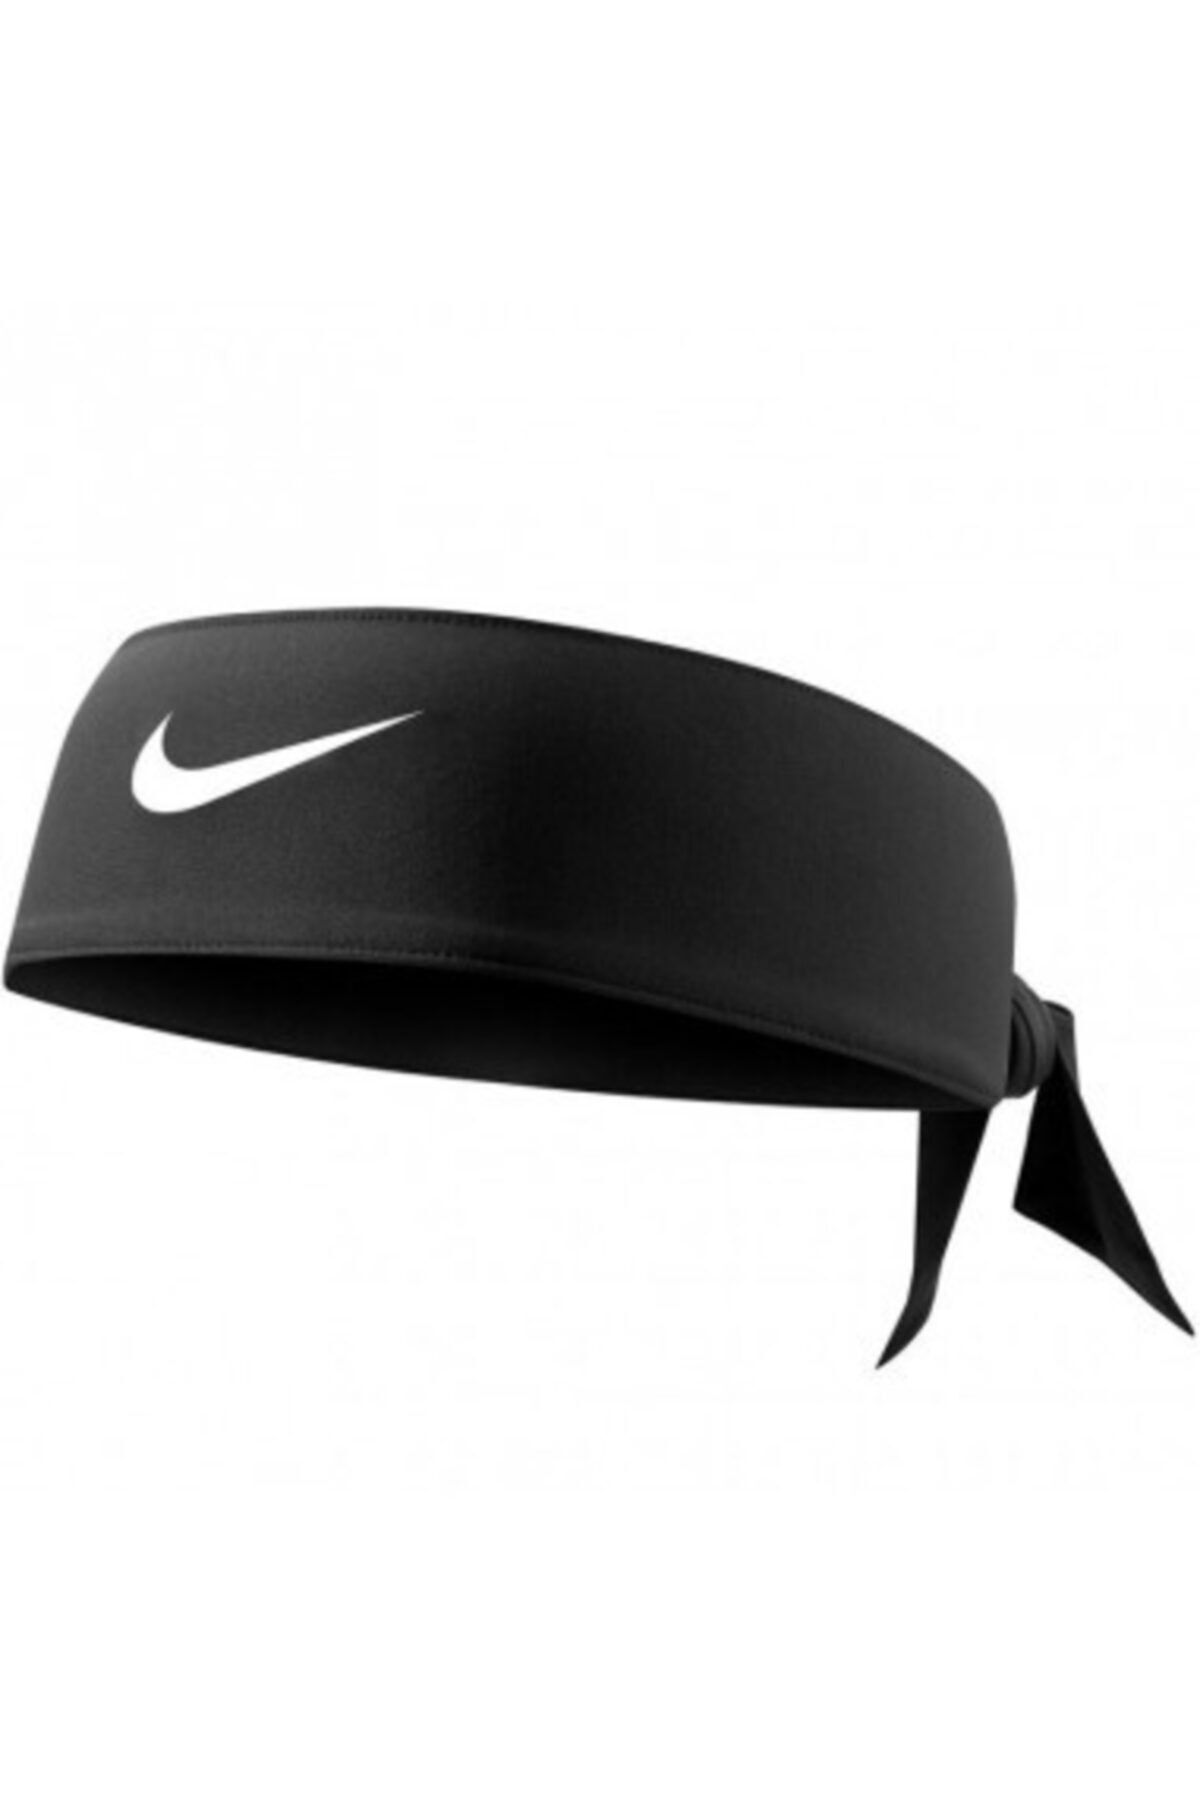 Nike Dri-fit Head Tie 4.0 Saç Bandı